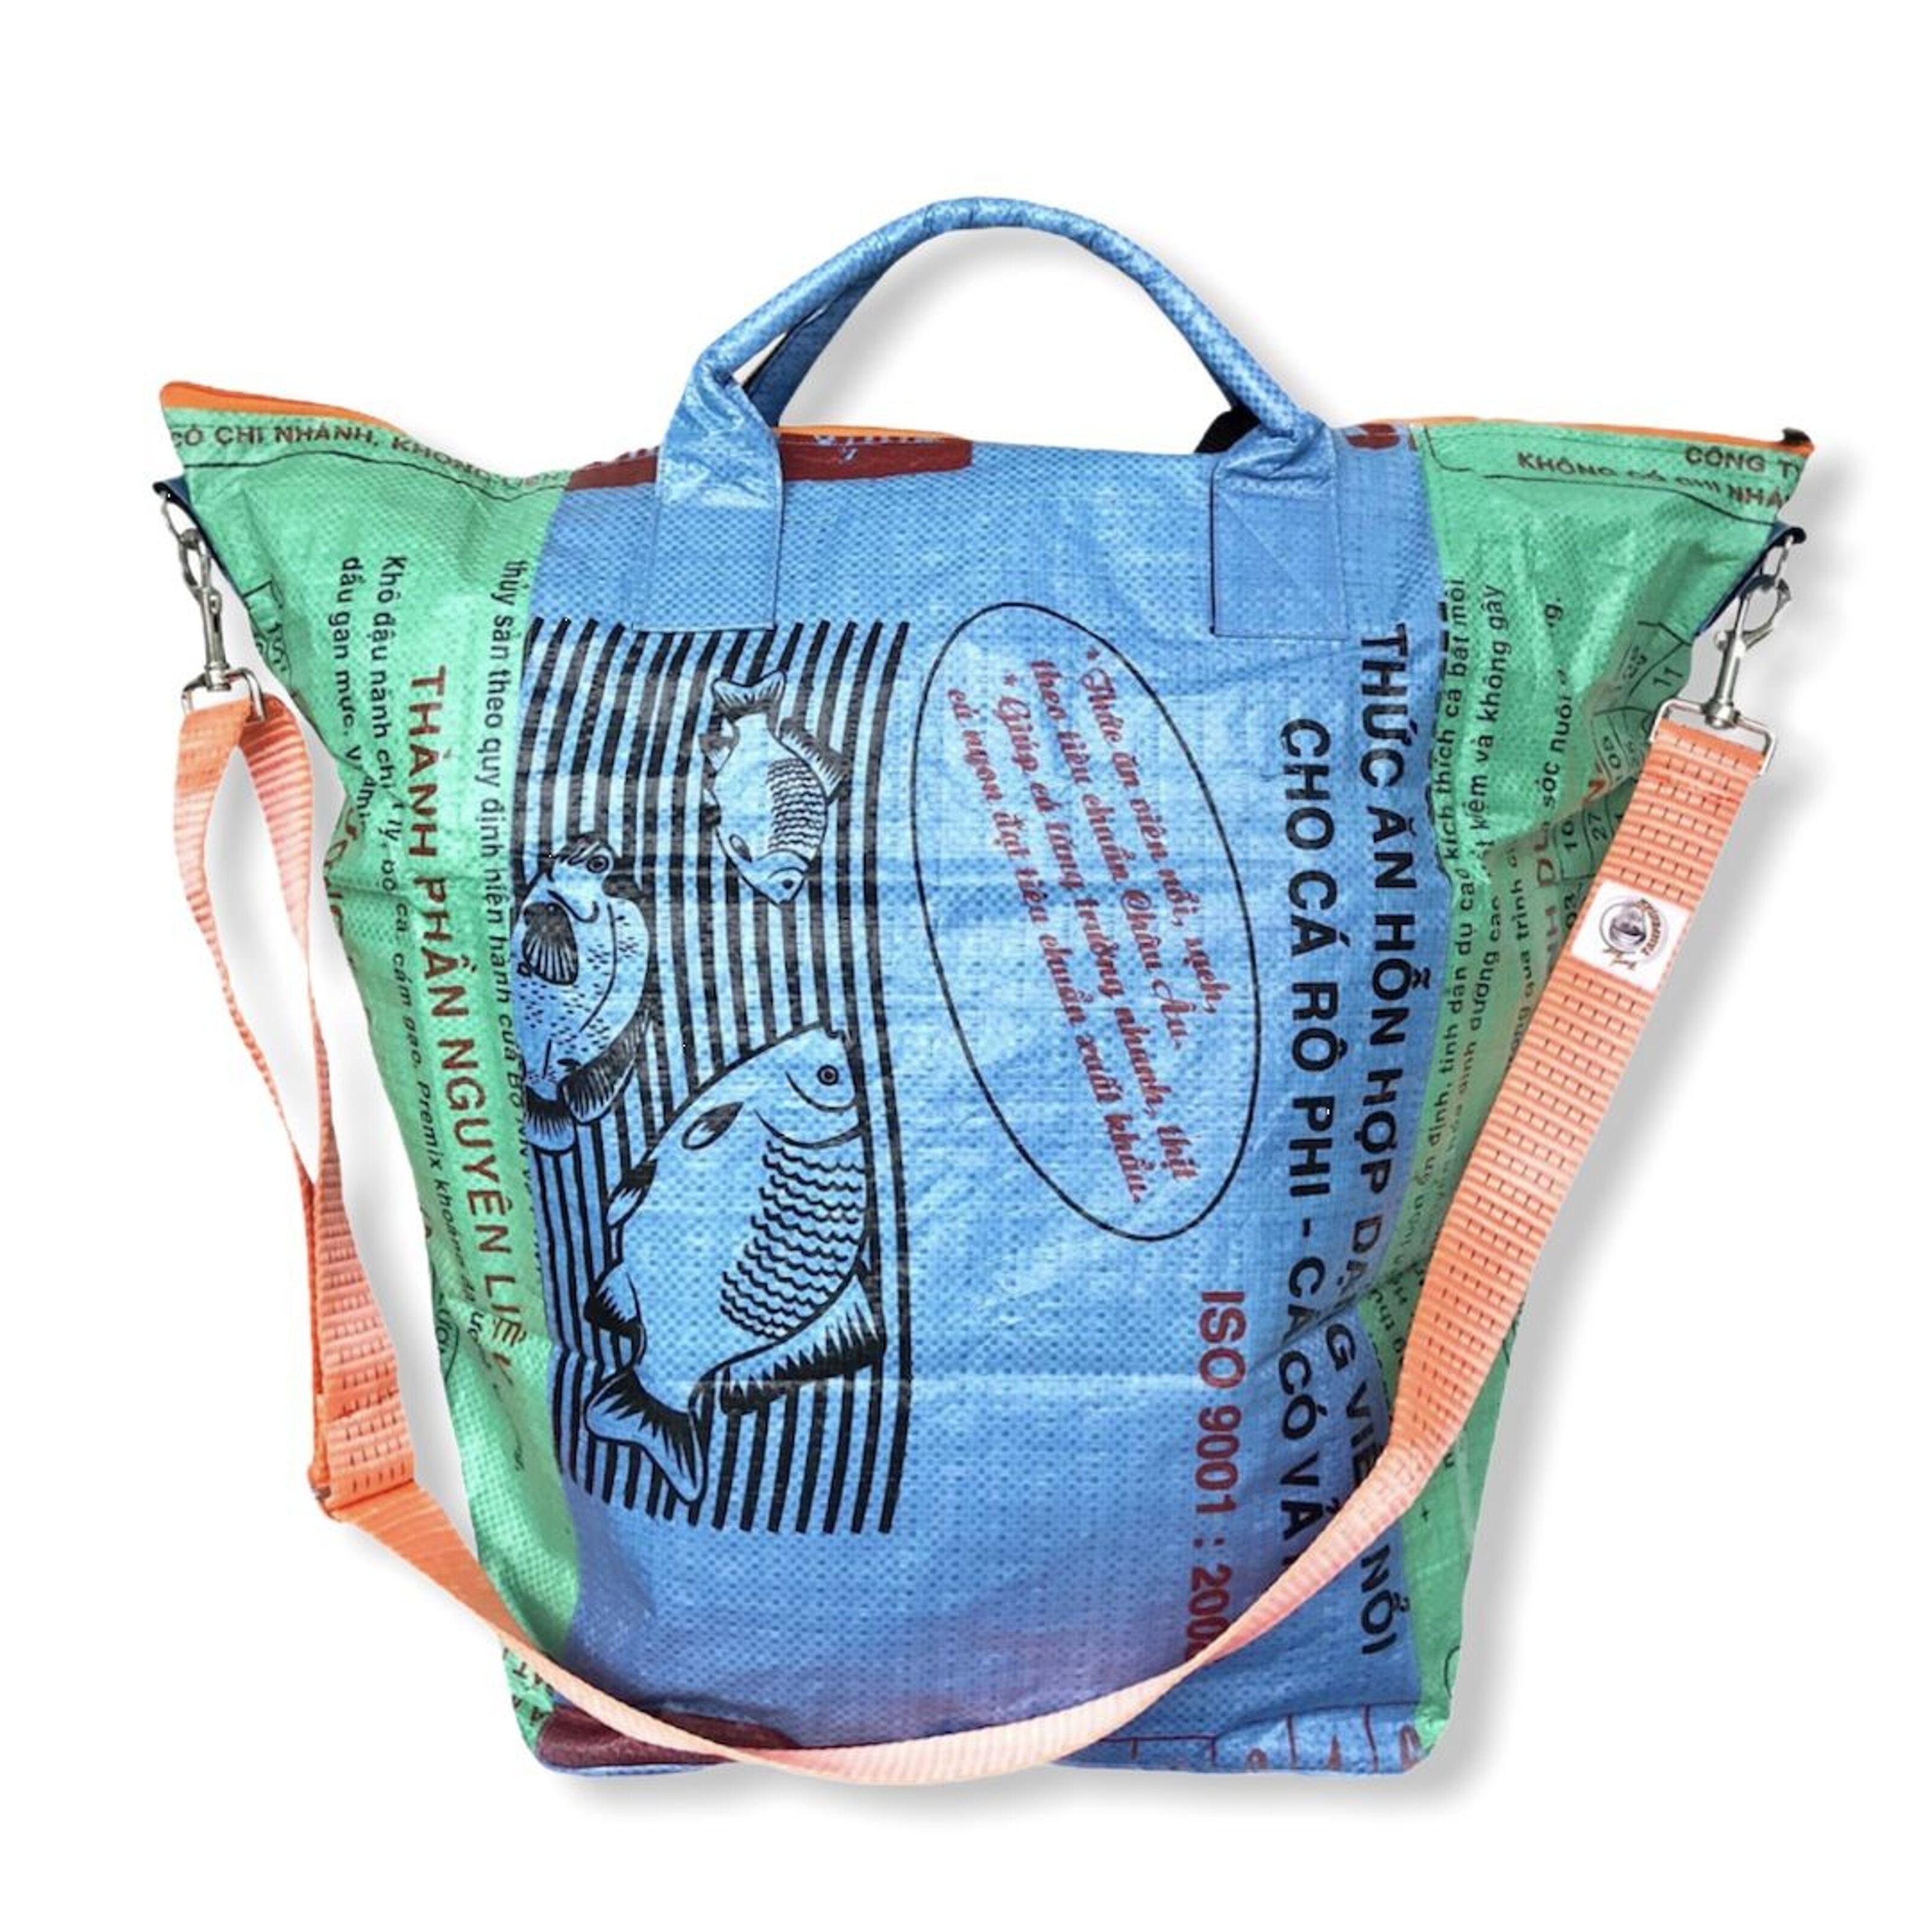 Kaufen Sie Beadbags Große Allzwecktragetasche aus recycelten Reissack mit  Tampenjan TJ5L zu Großhandelspreisen